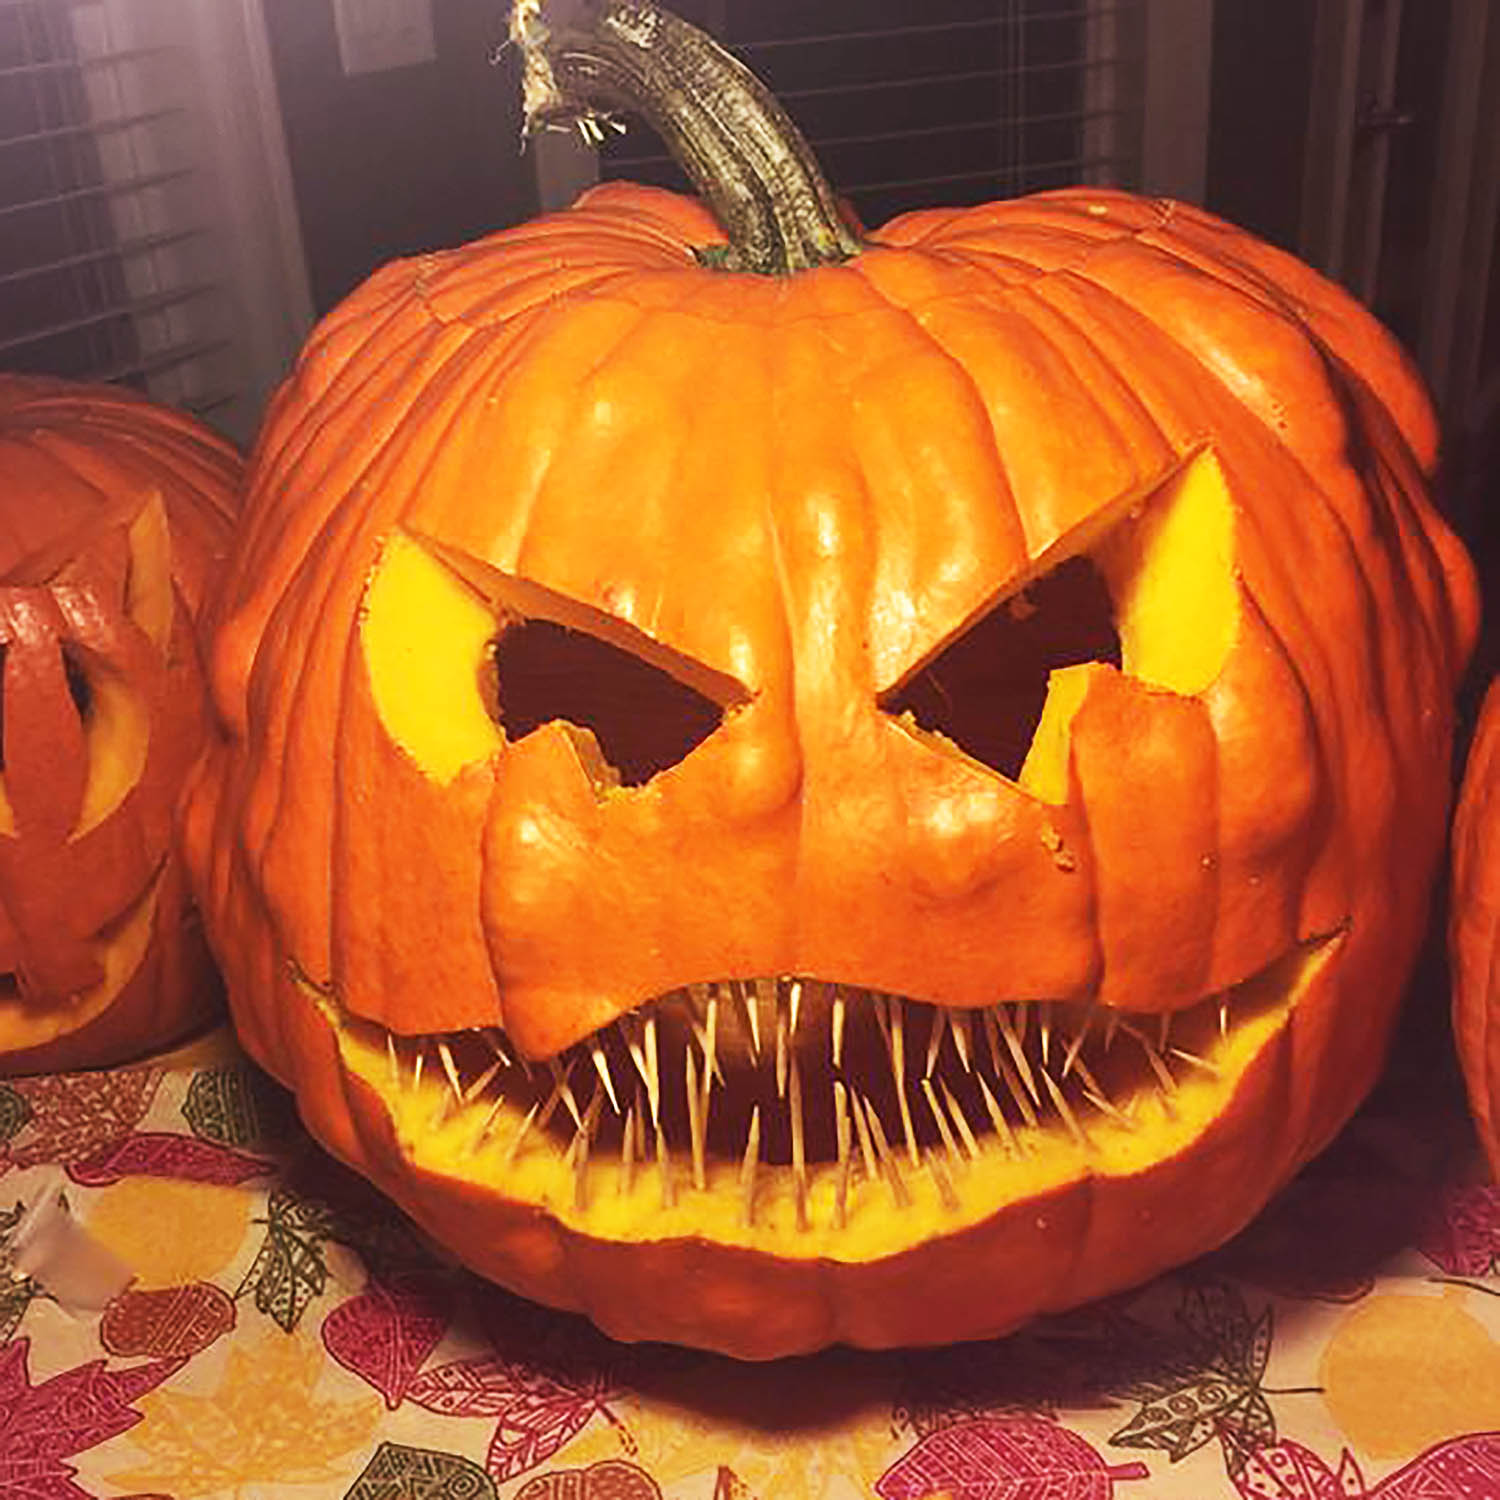 Best Pumpkin Carving Ideas for Halloween - 5 quick & scary pumpkin face ...